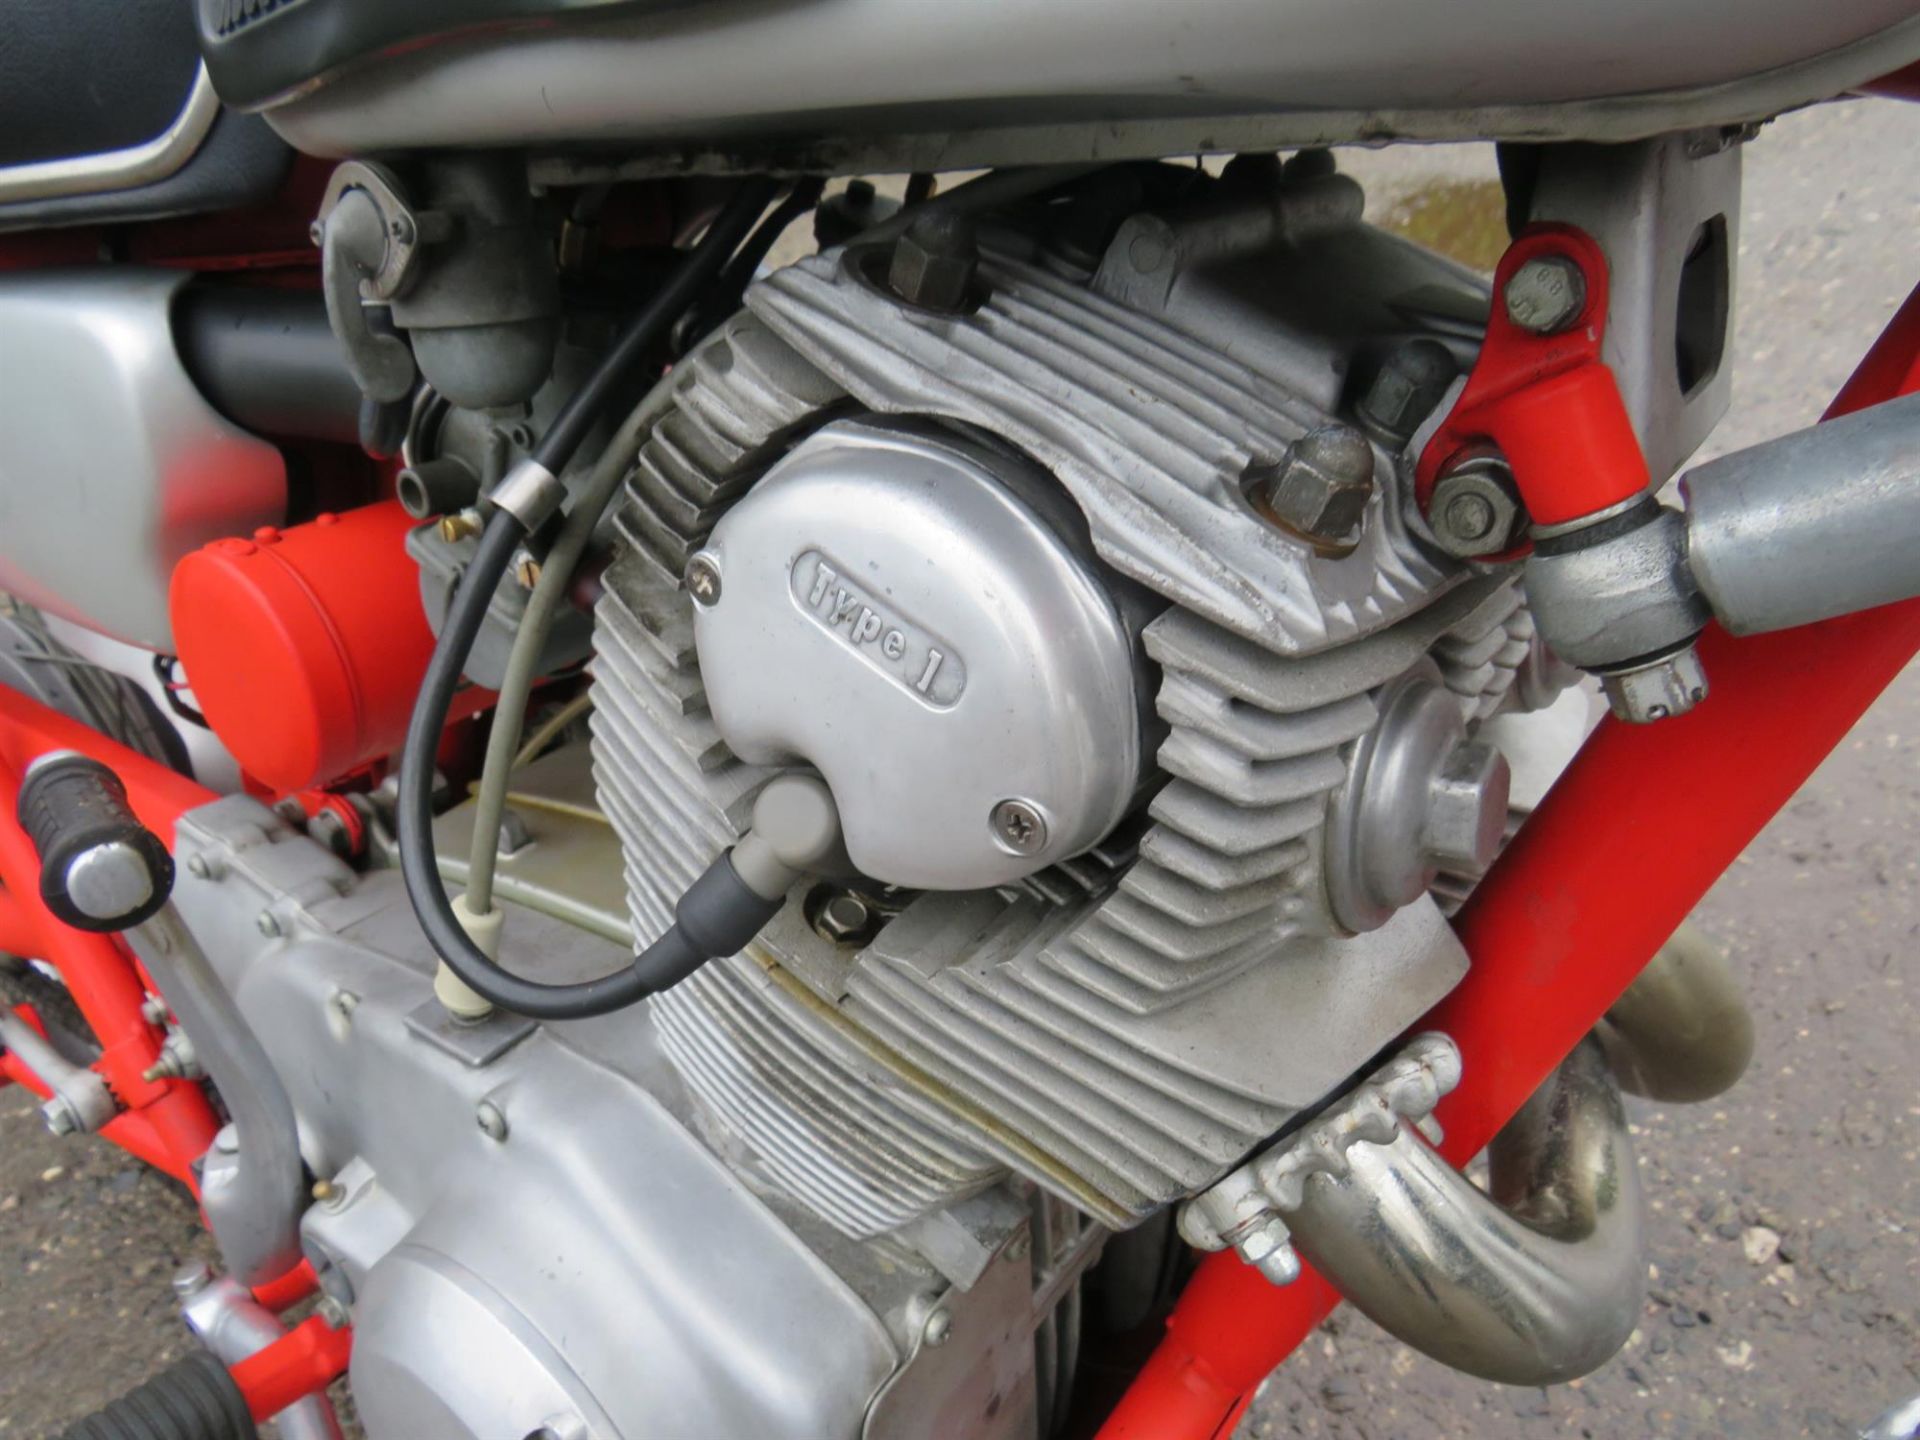 1966 Honda CL77 Scrambler 305cc - Image 7 of 10